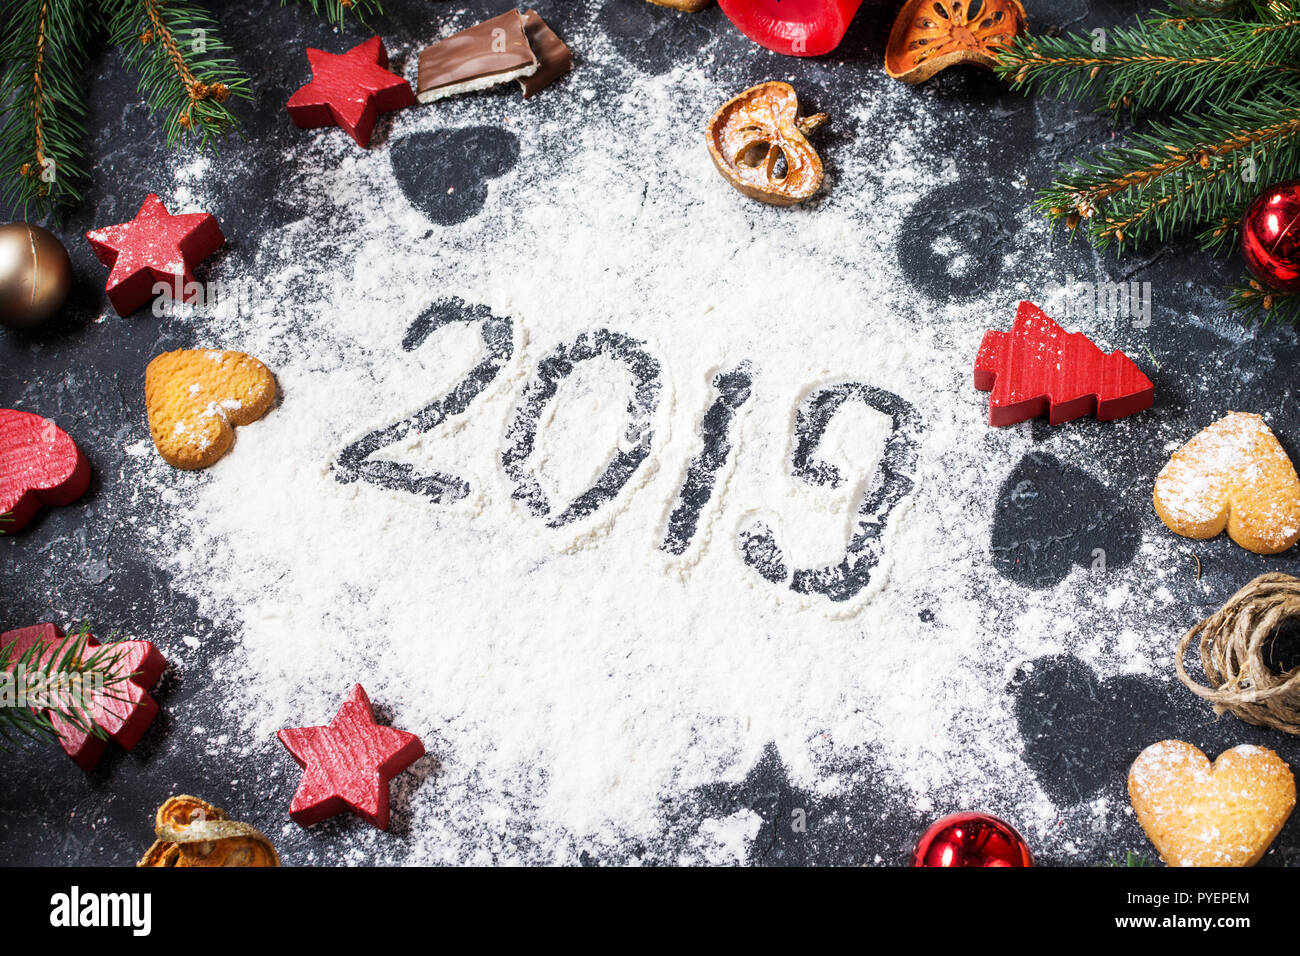 Frohes Neues Jahr 2019 auf Mehl und Weihnachtsschmuck Lebkuchen Cookies auf dunklem Stein Hintergrund geschrieben. Neues Jahr Grußkarte Stockfoto